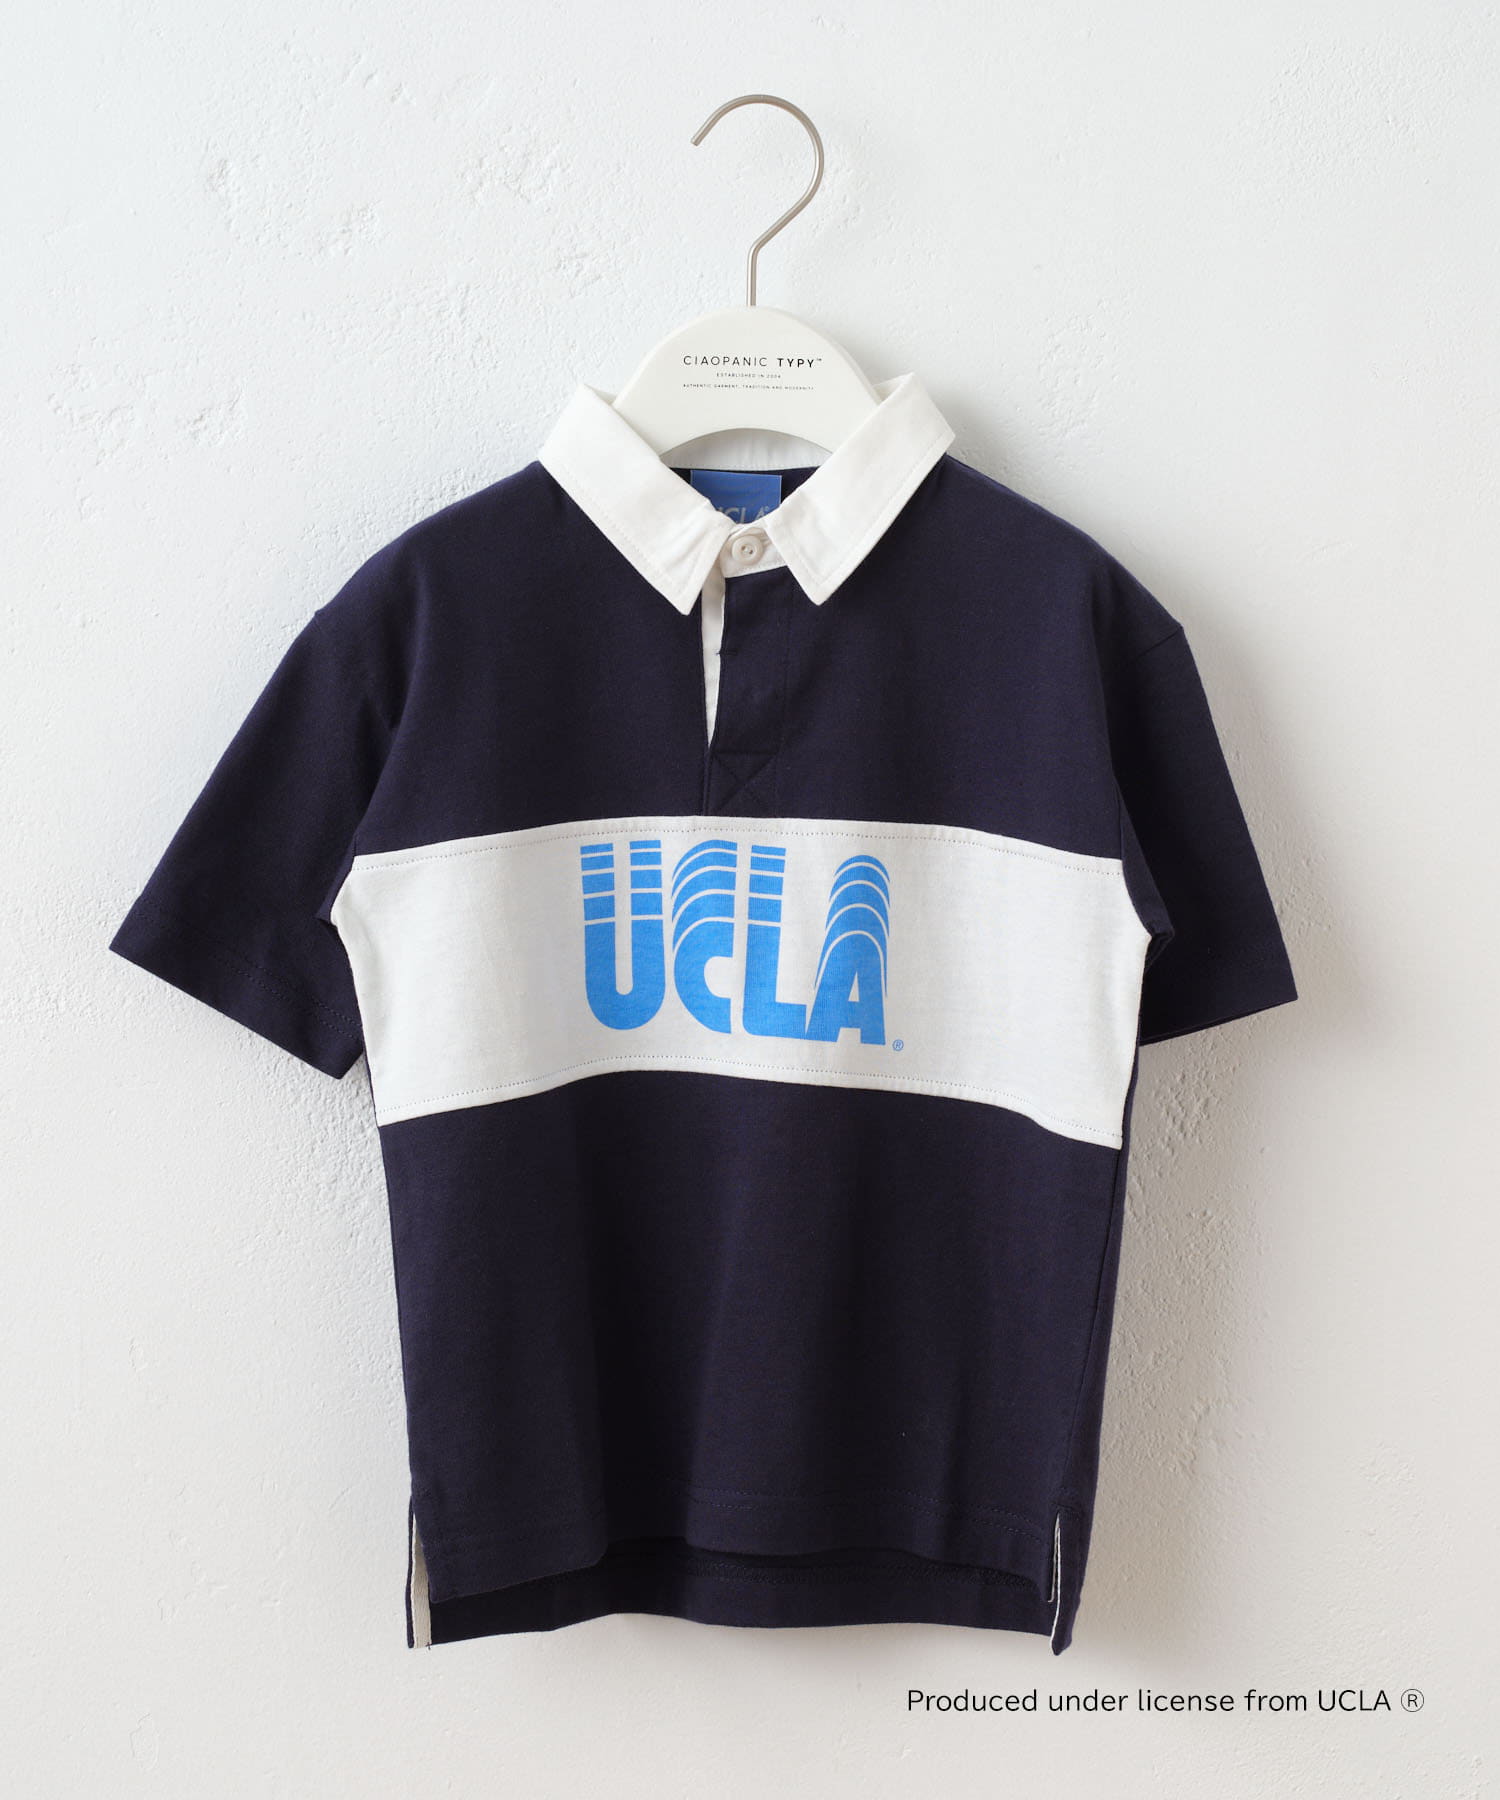 CIAOPANIC TYPY(チャオパニックティピー) 【KIDS】【UCLA】ラガーシャツ